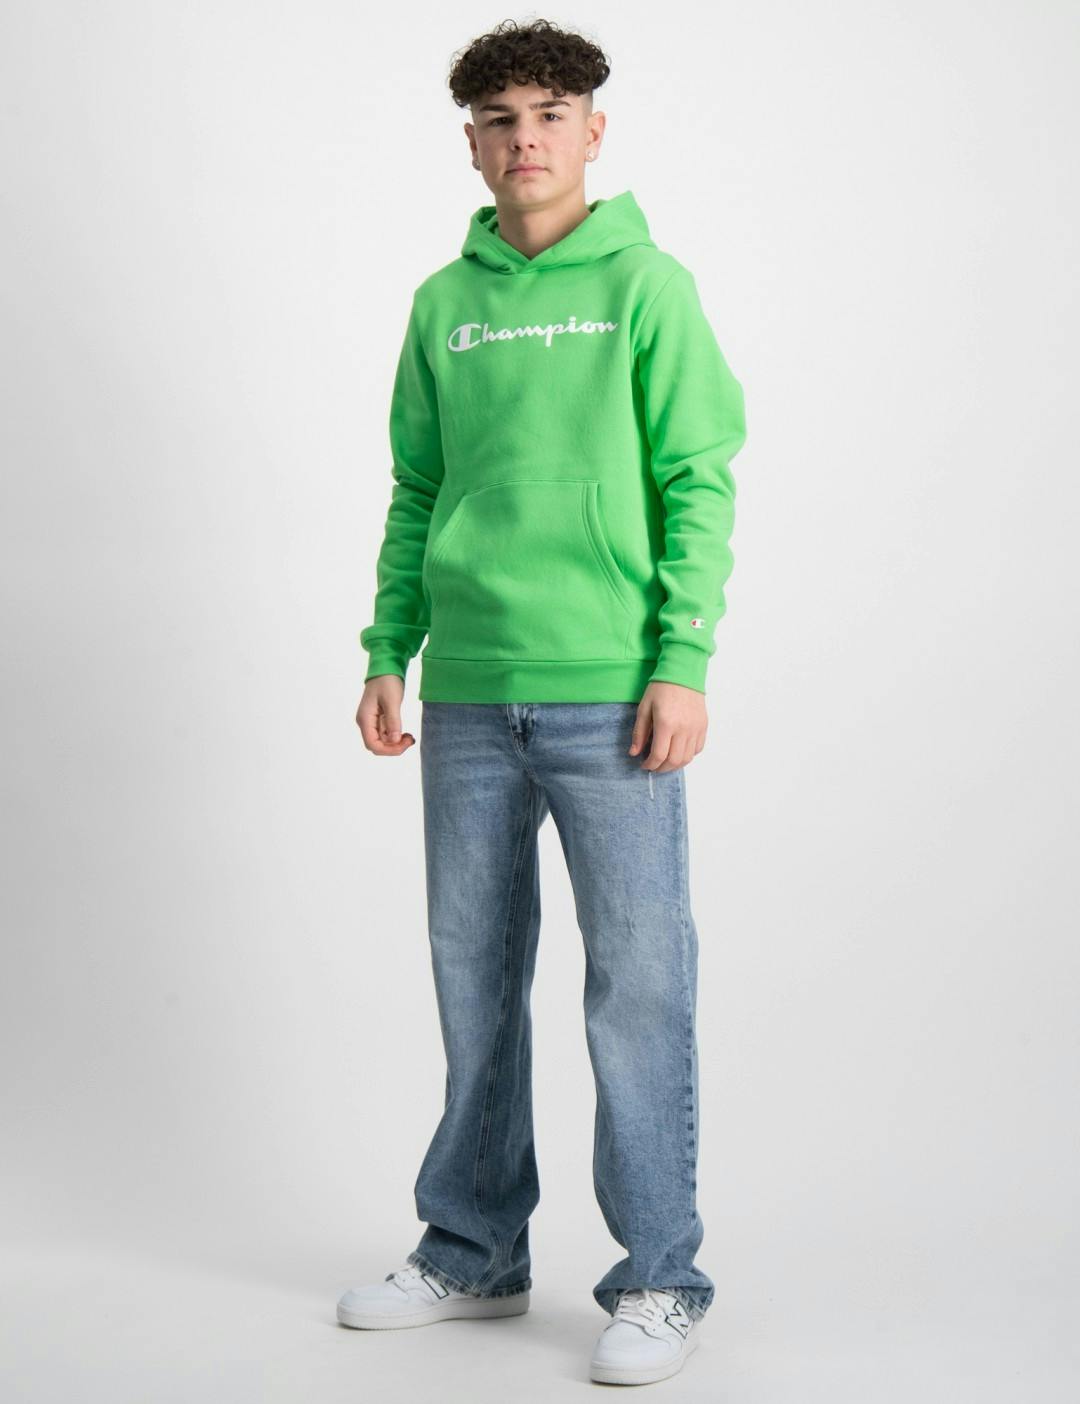 Grün Hooded Sweatshirt für Jungen | Brand Kids Store